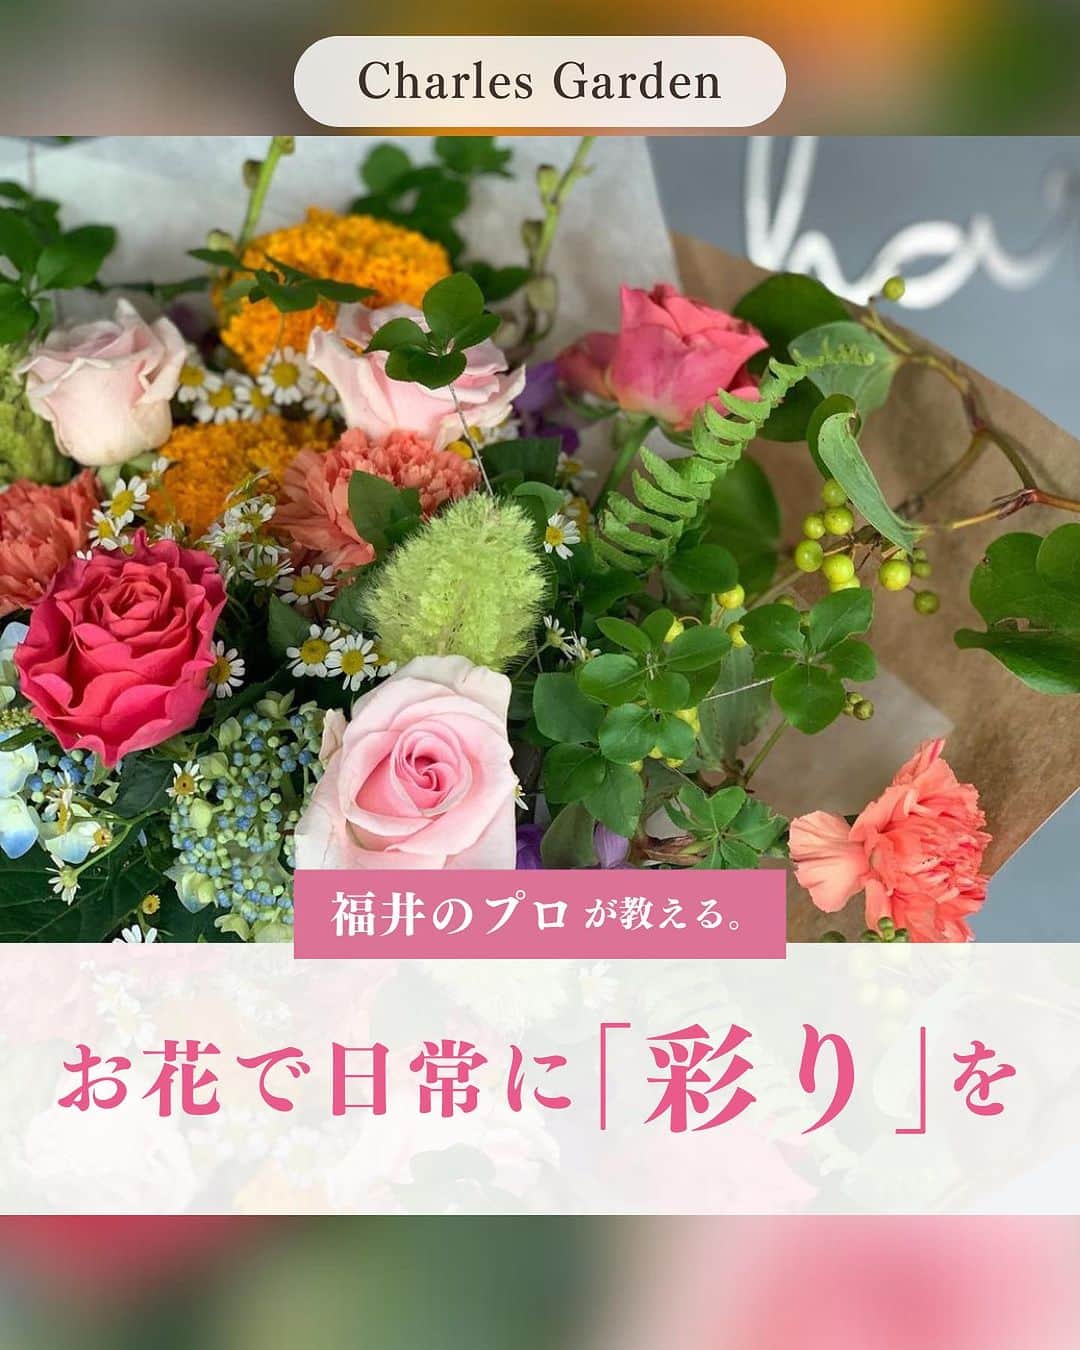 くらしく 福井 で暮らす女性のための情報サイトのインスタグラム：「@and_fukui_←福井在住のプロが教える！  ＼ お花で日常に「彩り」を🌈／ 今回⁣ご紹介するのは、Charles Garden さん！⁣@charlesgarden  お花のことならなんでもお任せ💐✨ ドライフラワーからプリザードフラワー、おしゃれな雑貨の販売やレッスンの開催など、幅広い場面で日常に彩りを与えてくれるお店をご紹介いたします😊  Charles Garden 《住所》坂井市丸岡町小黒74-58-3⁣ 《時間》月火　10:00〜19:00⁣ 　　　　金土日　11:00〜20:00 《定休日》水木 《Instagram》@charlesgarden  ＼ お知らせ🎉 ／ 今回ご紹介したCharles Gardenさんが10月9日 (月祝) に開催される「モデルハウスオープンイベント」に出店することが決定いたしました！  事前にご来場の予約をされた方に【Amazonギフト券1,000円分をプレゼント🎁✨】 家族で楽しめる特典もたくさんご用意しております👨‍👩‍👧♬  日時：10/7(土)〜10/9(月祝) 場所：福井市高柳3丁目3107 料金：無料  お気軽にお問い合わせください！ 🌷︎0776-52-0005  詳しくはこちらをチェック💁‍♀️https://www.eshin-eshin.co.jp/2023takayanagi/#form  *・。*・。*・。*・。*・。*・。*・。*・。*・。  「ママとして、妻として、女性として」  福井県は共働き率の高い「働きもの」の土地柄。そんなくらしの中で、1人で何役もこなす福井の女性を応援するために福井で生まれた、地元福井の情報サイトです。  *・。*・。*・。*・。*・。*・。*・。*・。*  #福井 #福井花屋 #CharlesGarden」